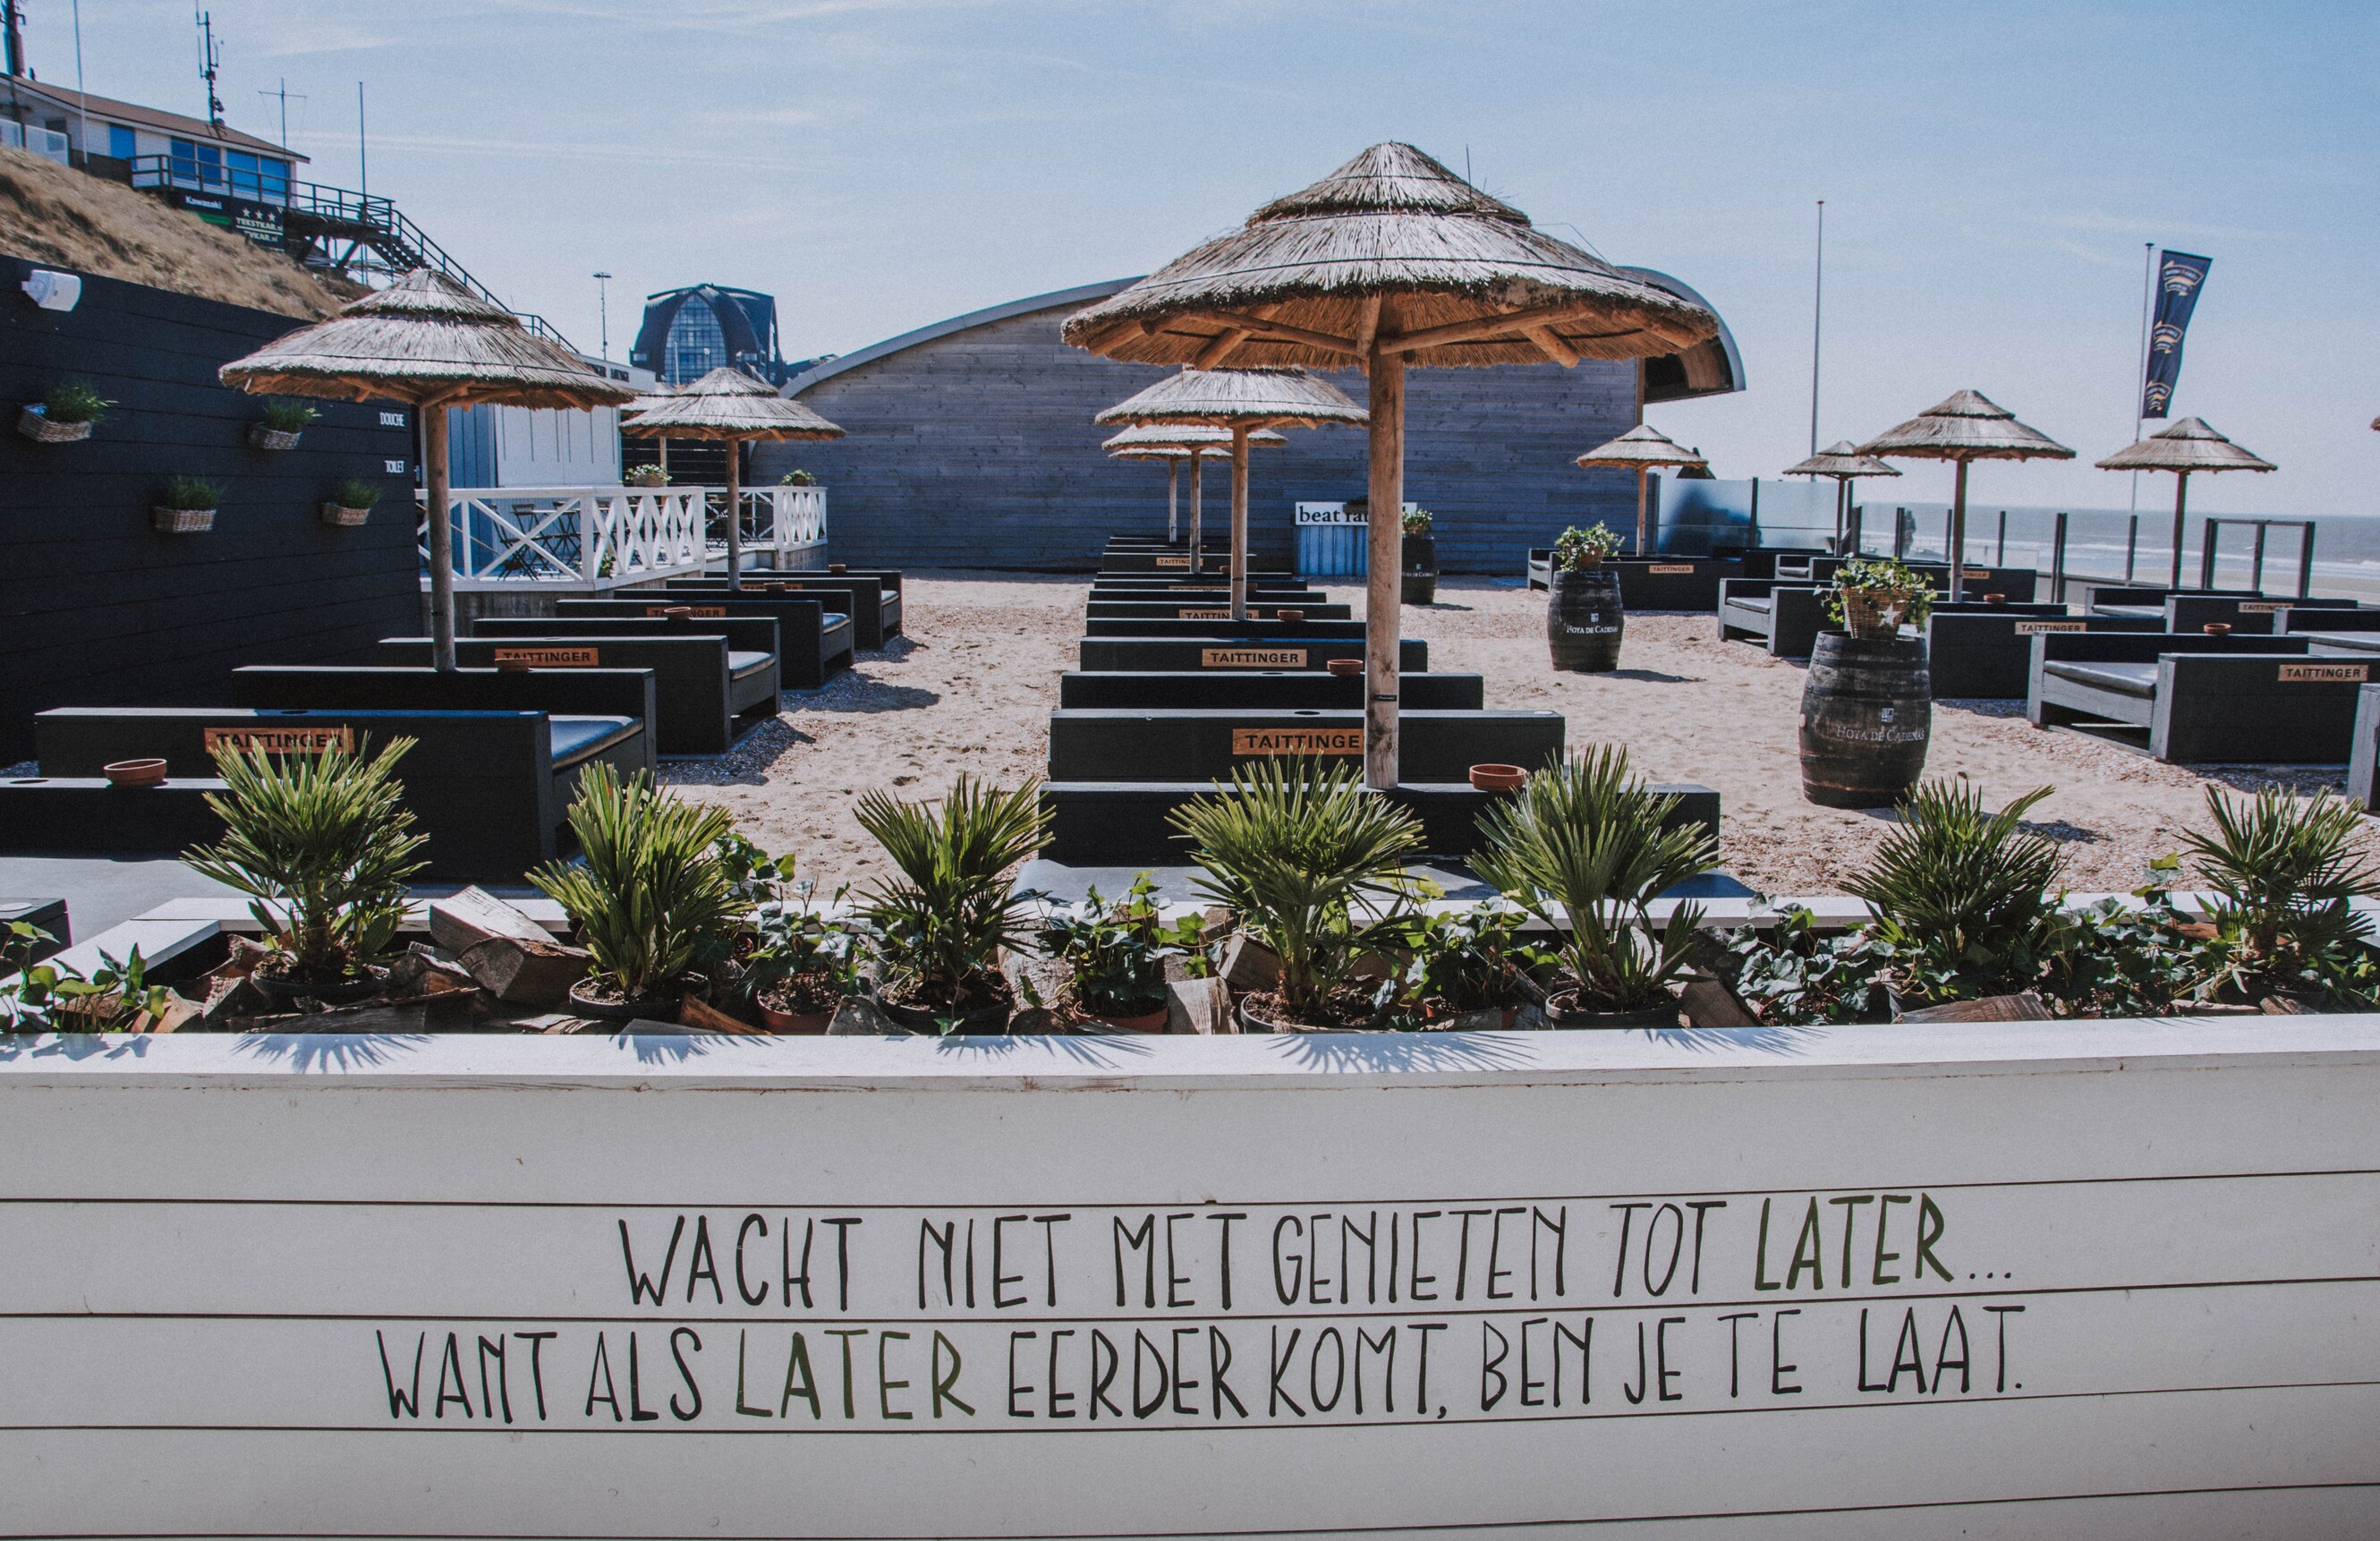 Bakken en braden! 12 x leukste strandtenten in de buurt van - De Buik van Amsterdam